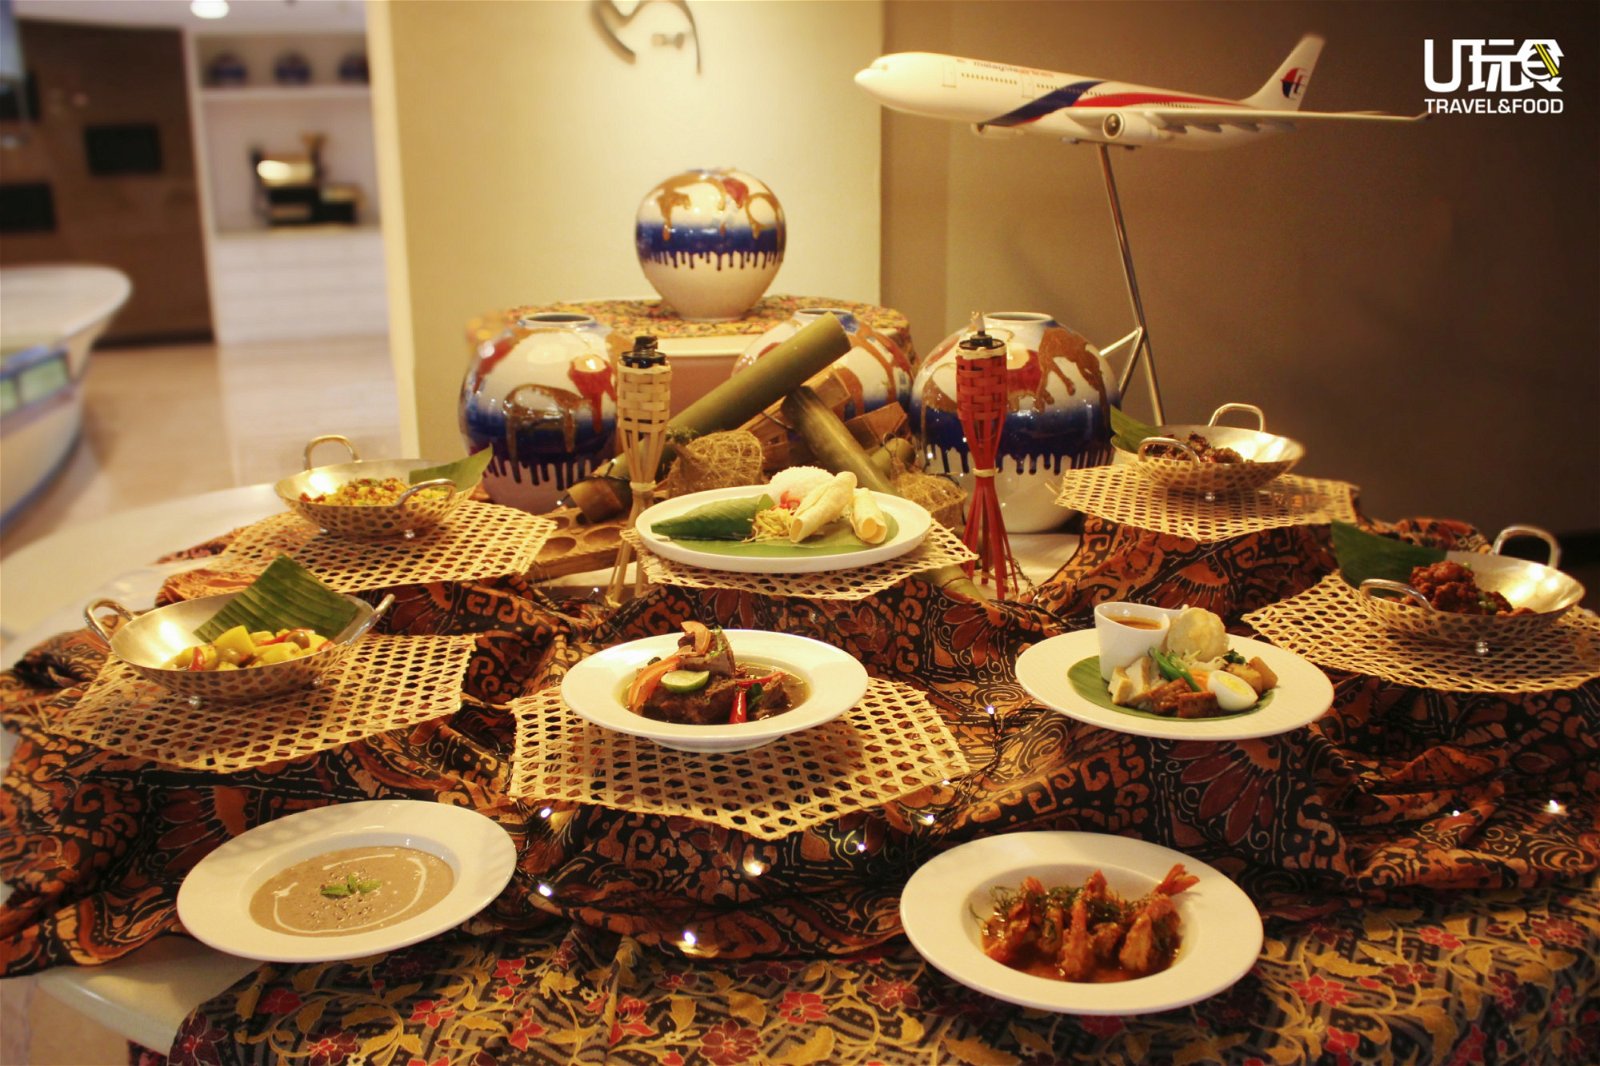 马航的著名款待与吉隆坡喜来登帝国酒店的卓越厨艺完美融合，在黄金贵宾室营造出高雅的节日氛围，让旅客们将品尝到丰盛的特色美食。